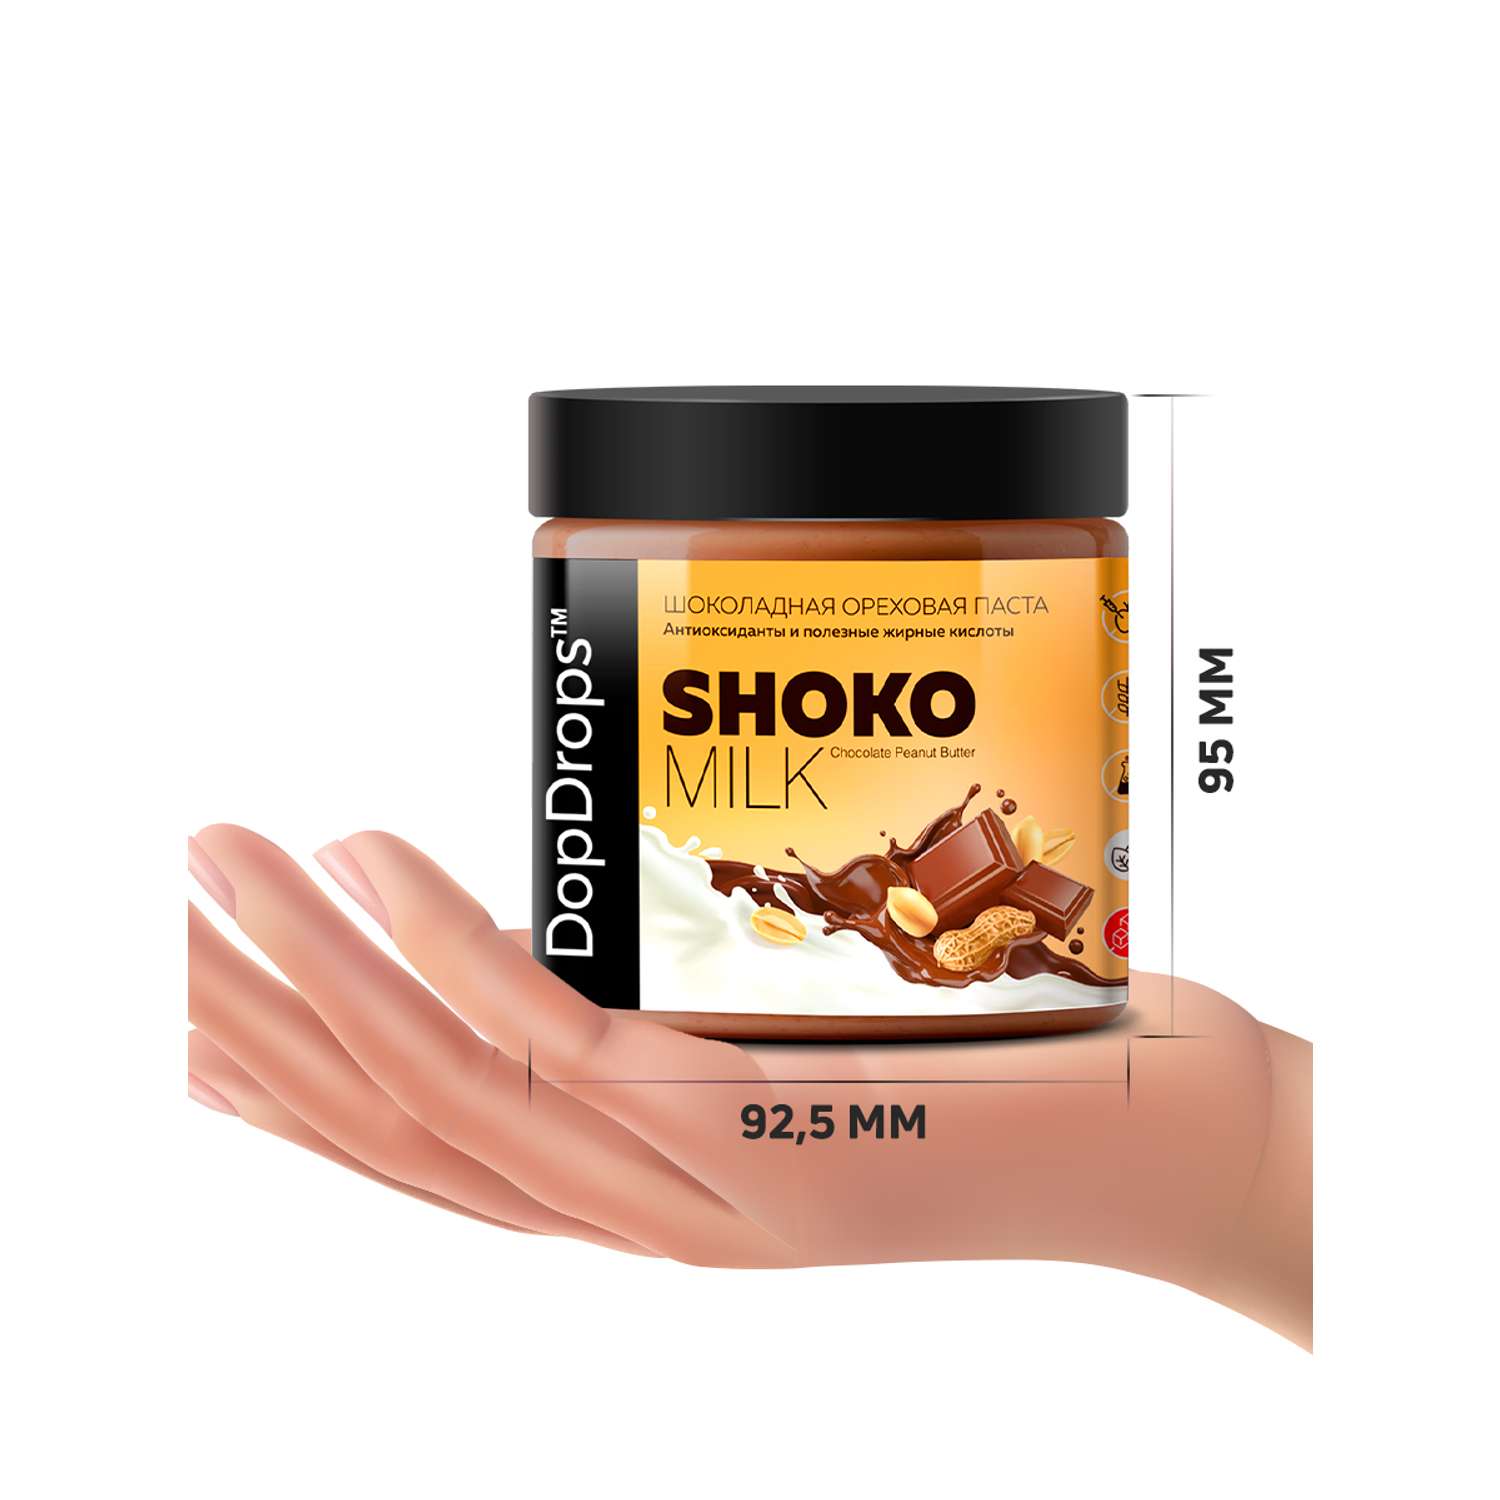 Шоколадная ореховая паста DopDrops Shoko milk арахисовая без сахара 500 г - фото 5